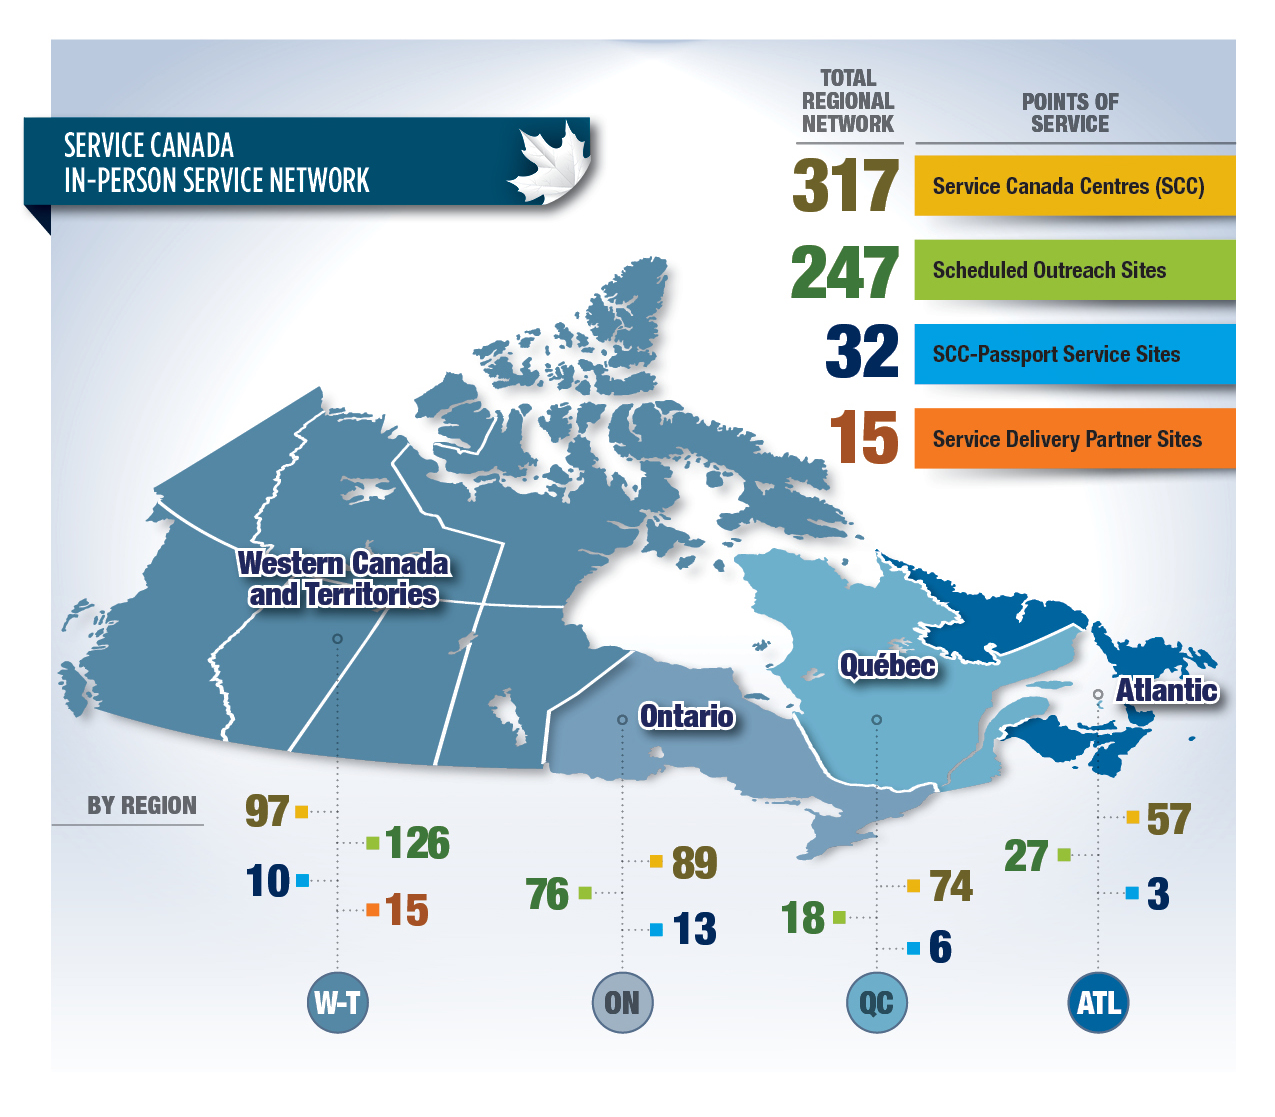 Figure 2: Service Canada In-Person Service Network